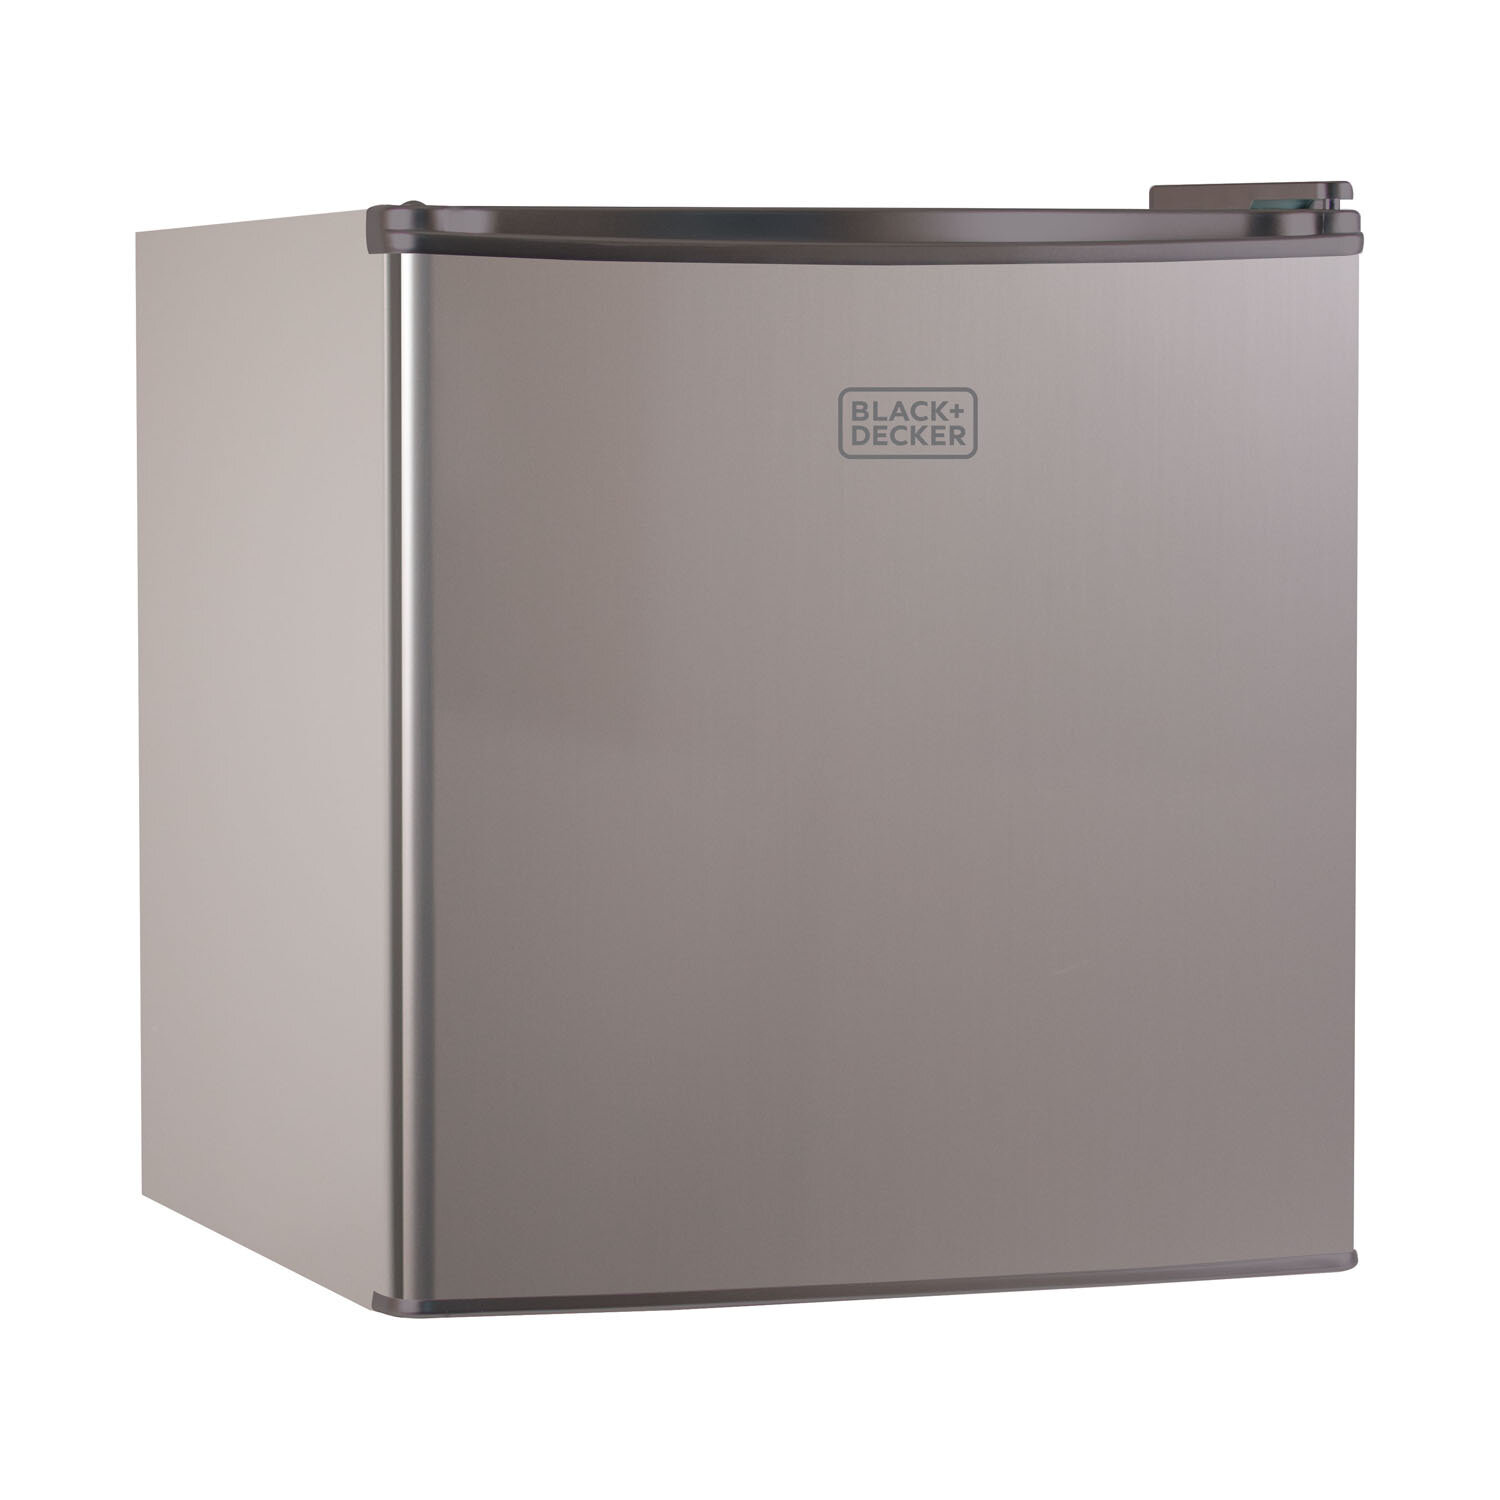 https://assets.wfcdn.com/im/53256200/compr-r85/3239/32397374/blackdecker-bcrk-series-17-cubic-feet-freestanding-mini-fridge-with-freezer.jpg